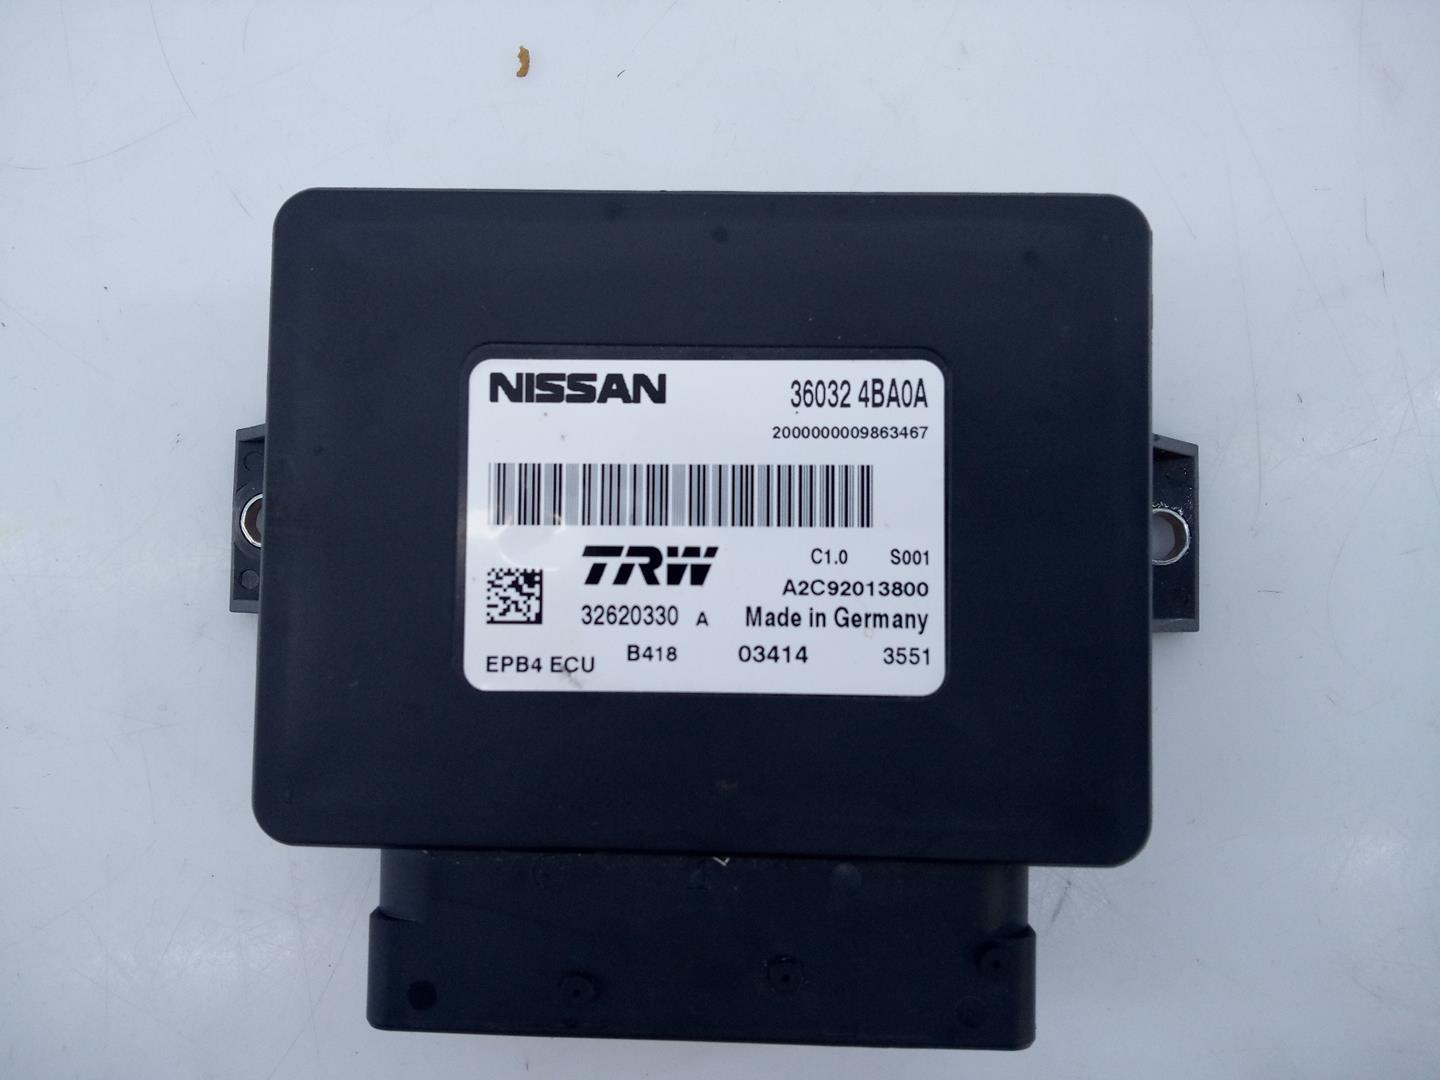 NISSAN Qashqai 2 generation (2013-2023) Immobiliser control unit 360324BA0A, 32620330A, E3-B4-22-4 20604375